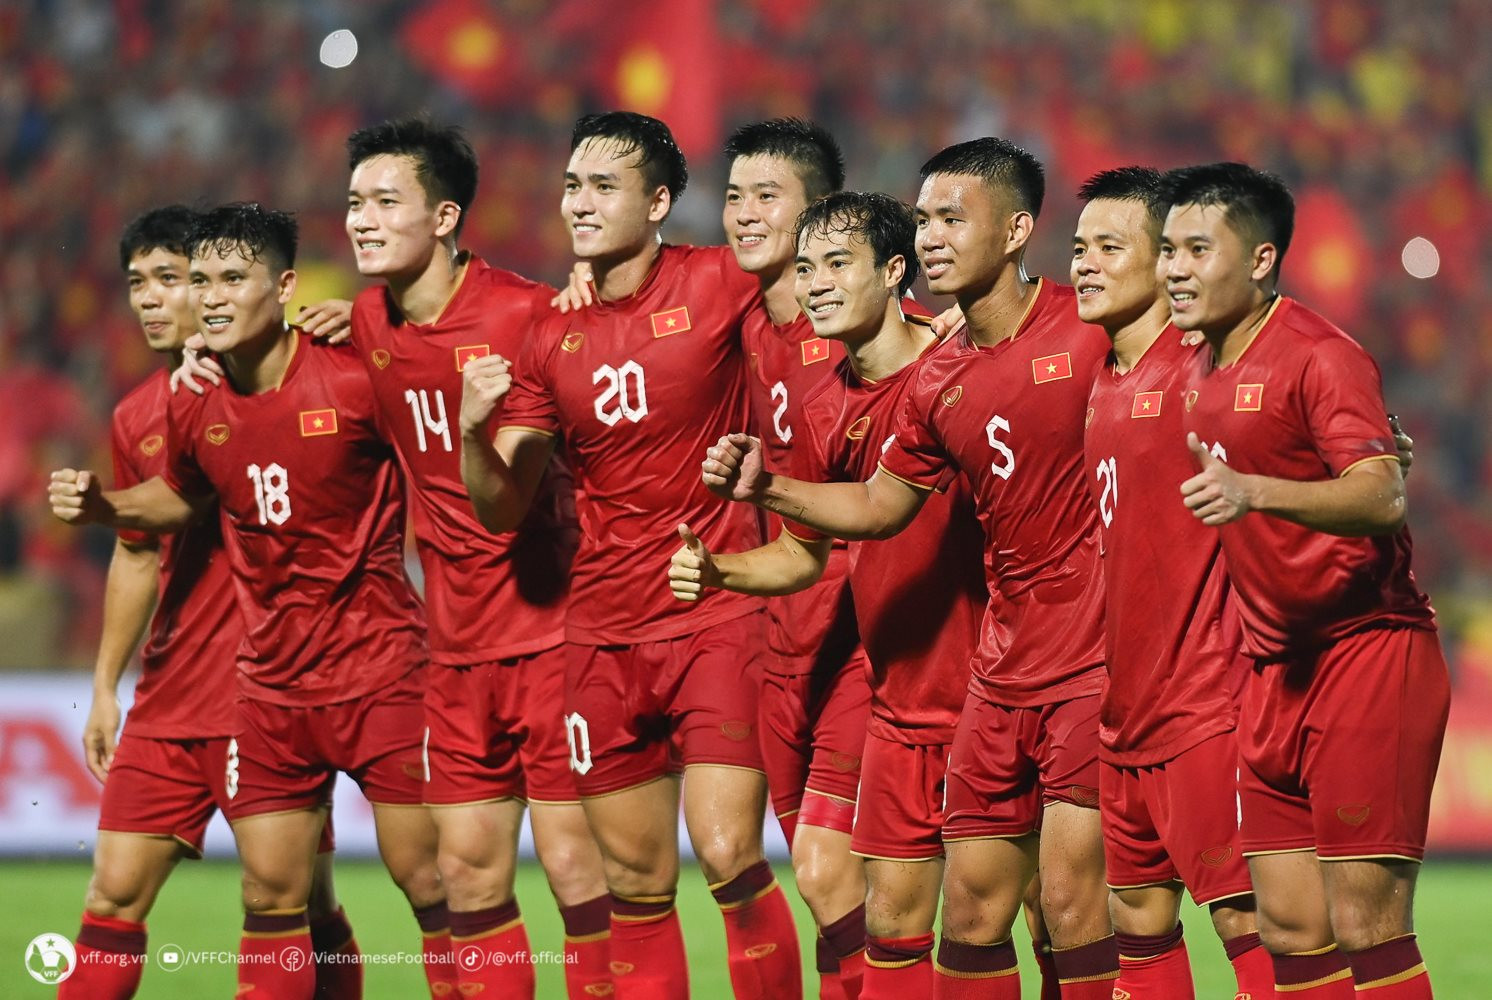 Vé xem trận đấu giữa tuyển Việt Nam và Nhật Bản tại giải châu Á được bán rẻ bất ngờ  - Ảnh 1.